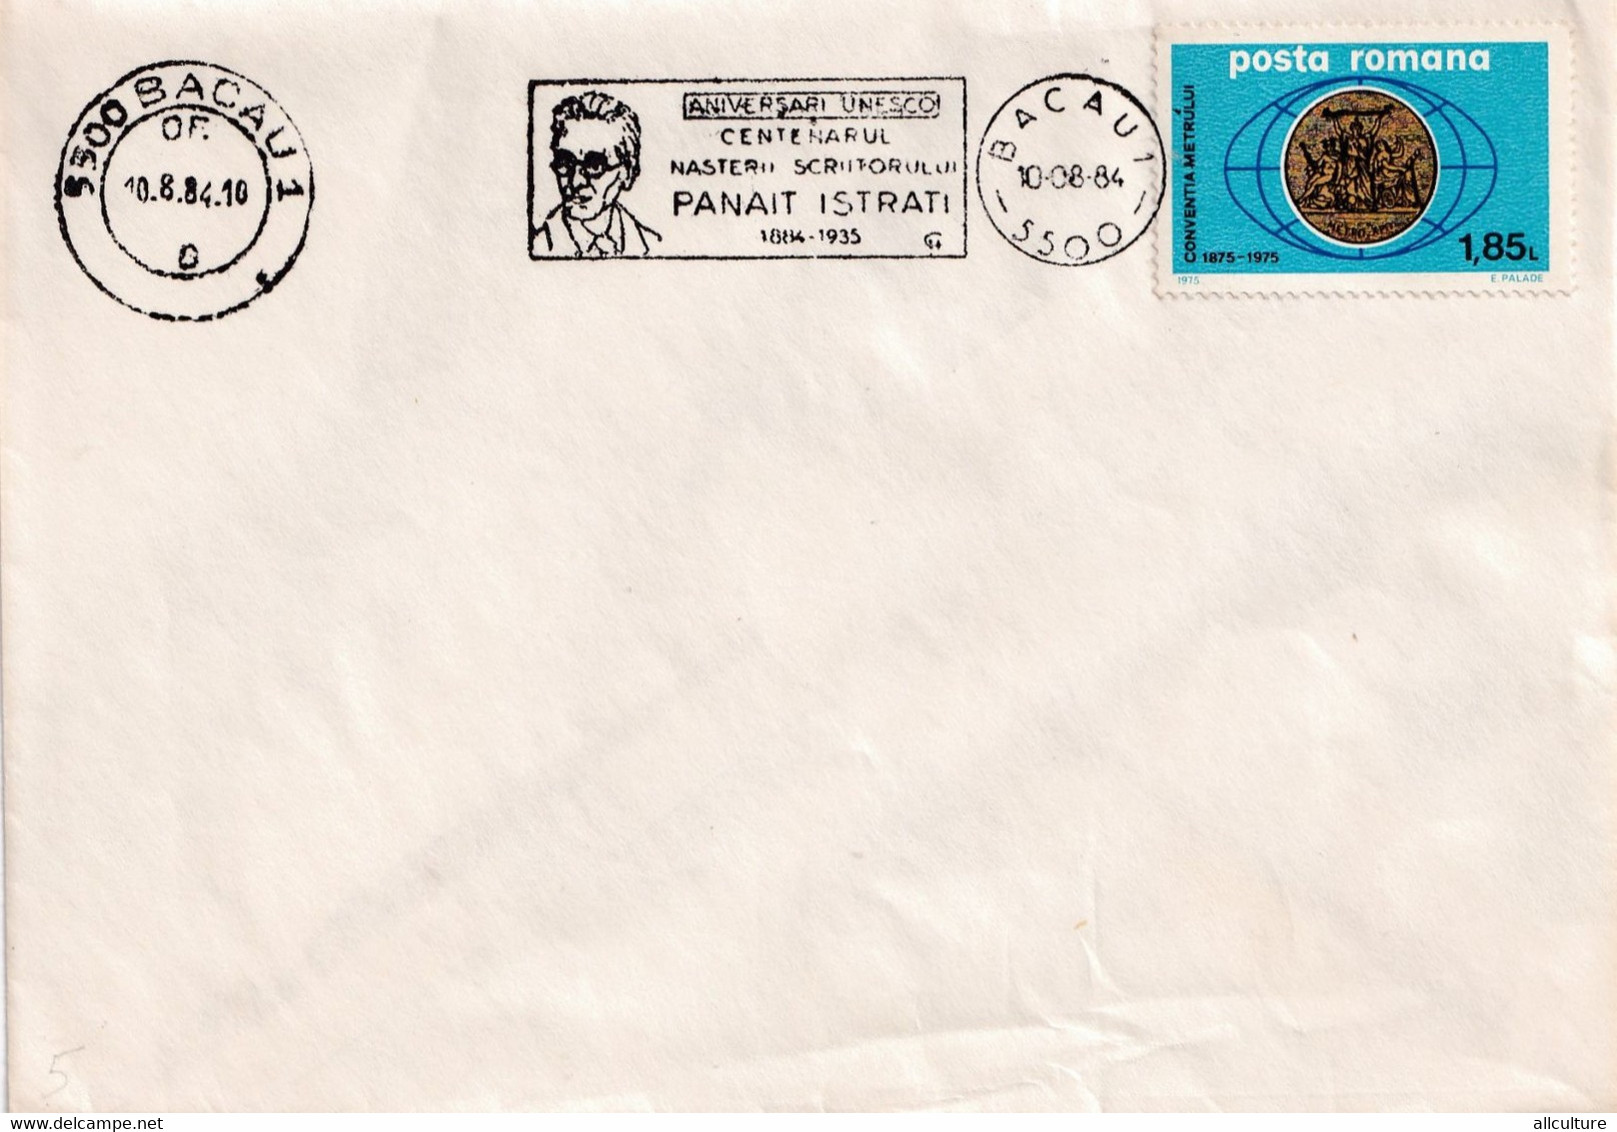 A2820 - Aniversari UNESCO, Centenarul Nasterii Scriitorului Panait Istrati, Bacau 1984 Romania - Briefe U. Dokumente